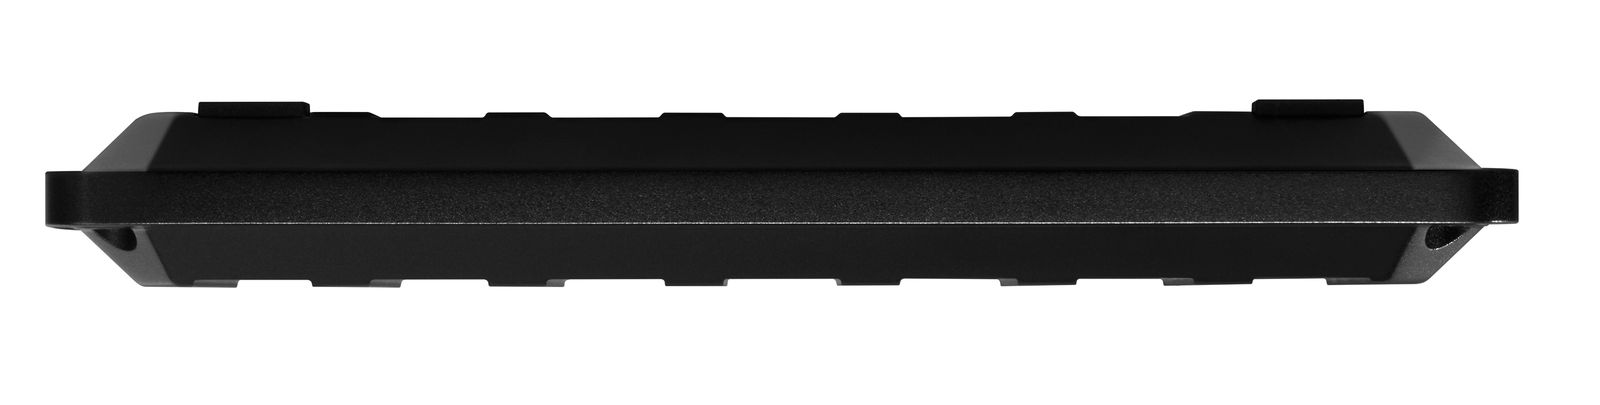 Recensione WD_Black P50, il James Dean degli Hard Disk USB-C